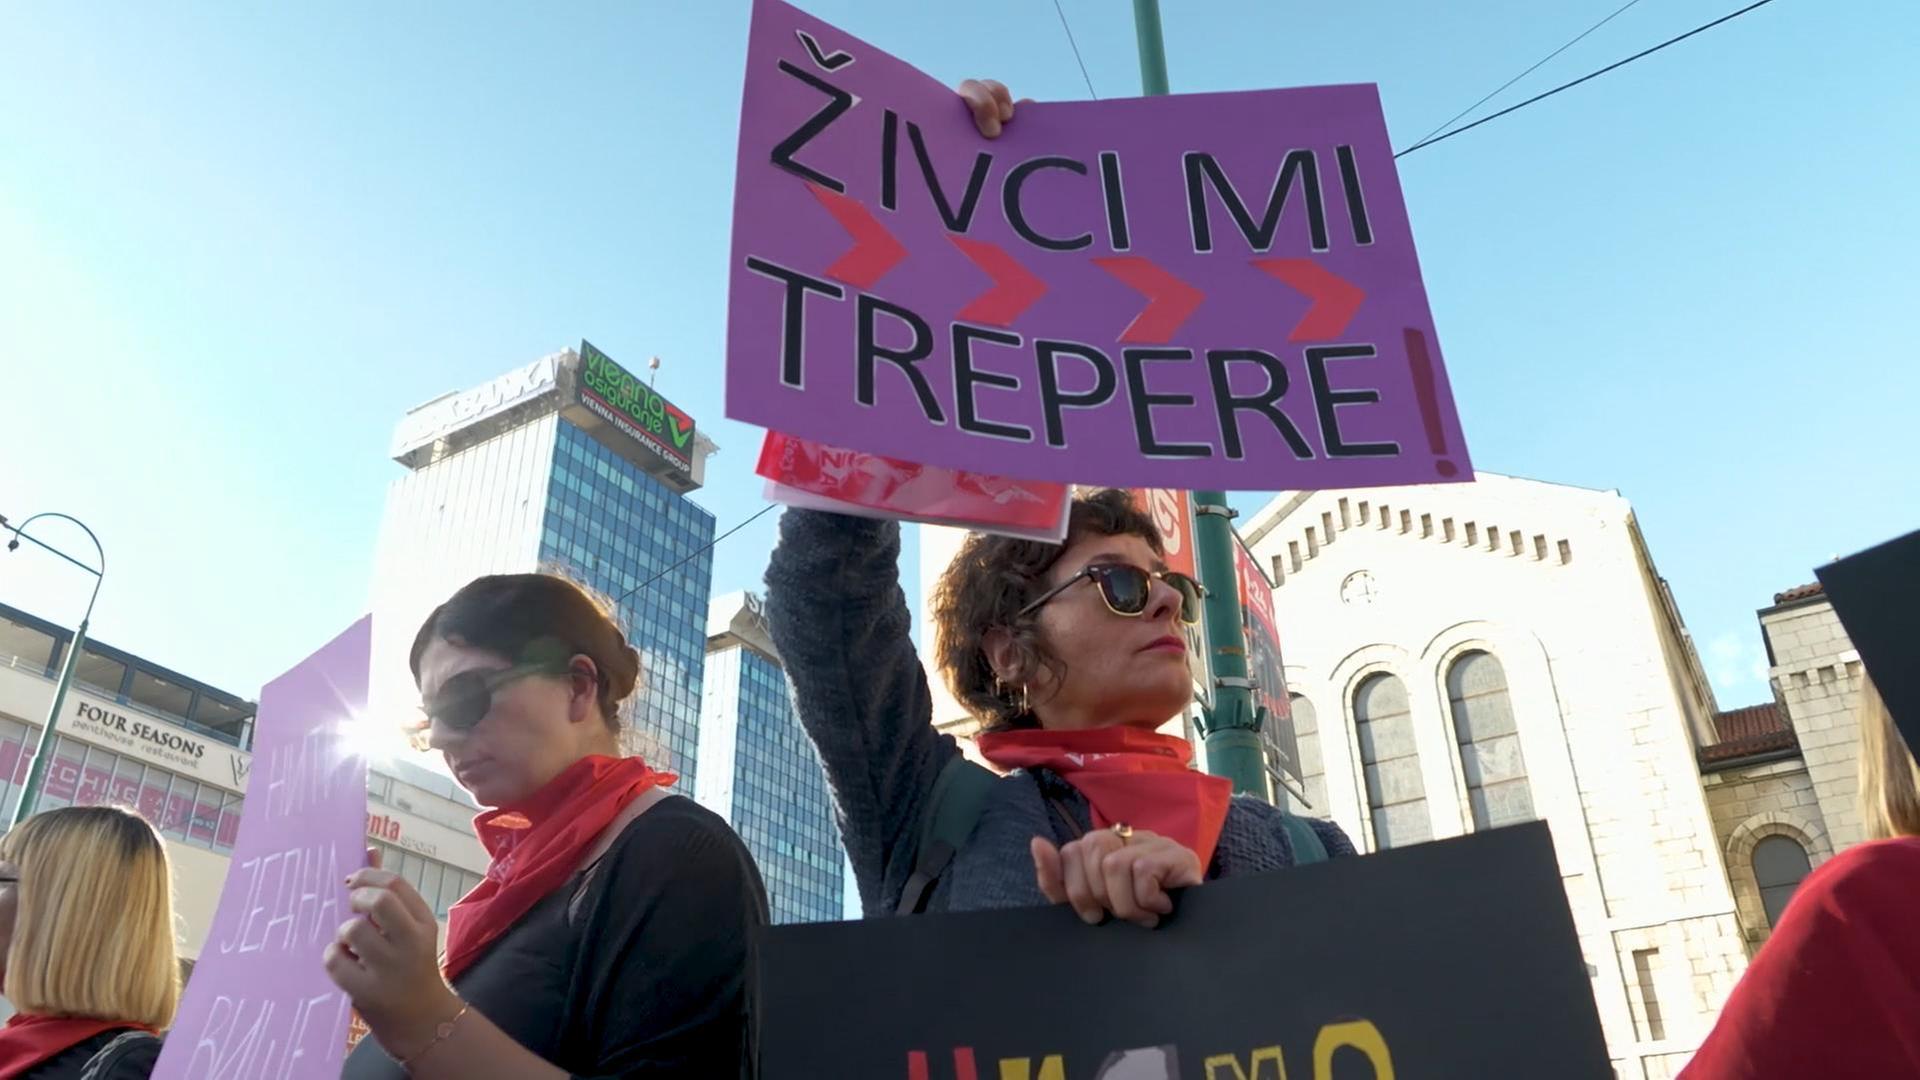 "Meine Nerven zittern", steht auf dem Plakat einer Demonstrantin in Sarajevo.